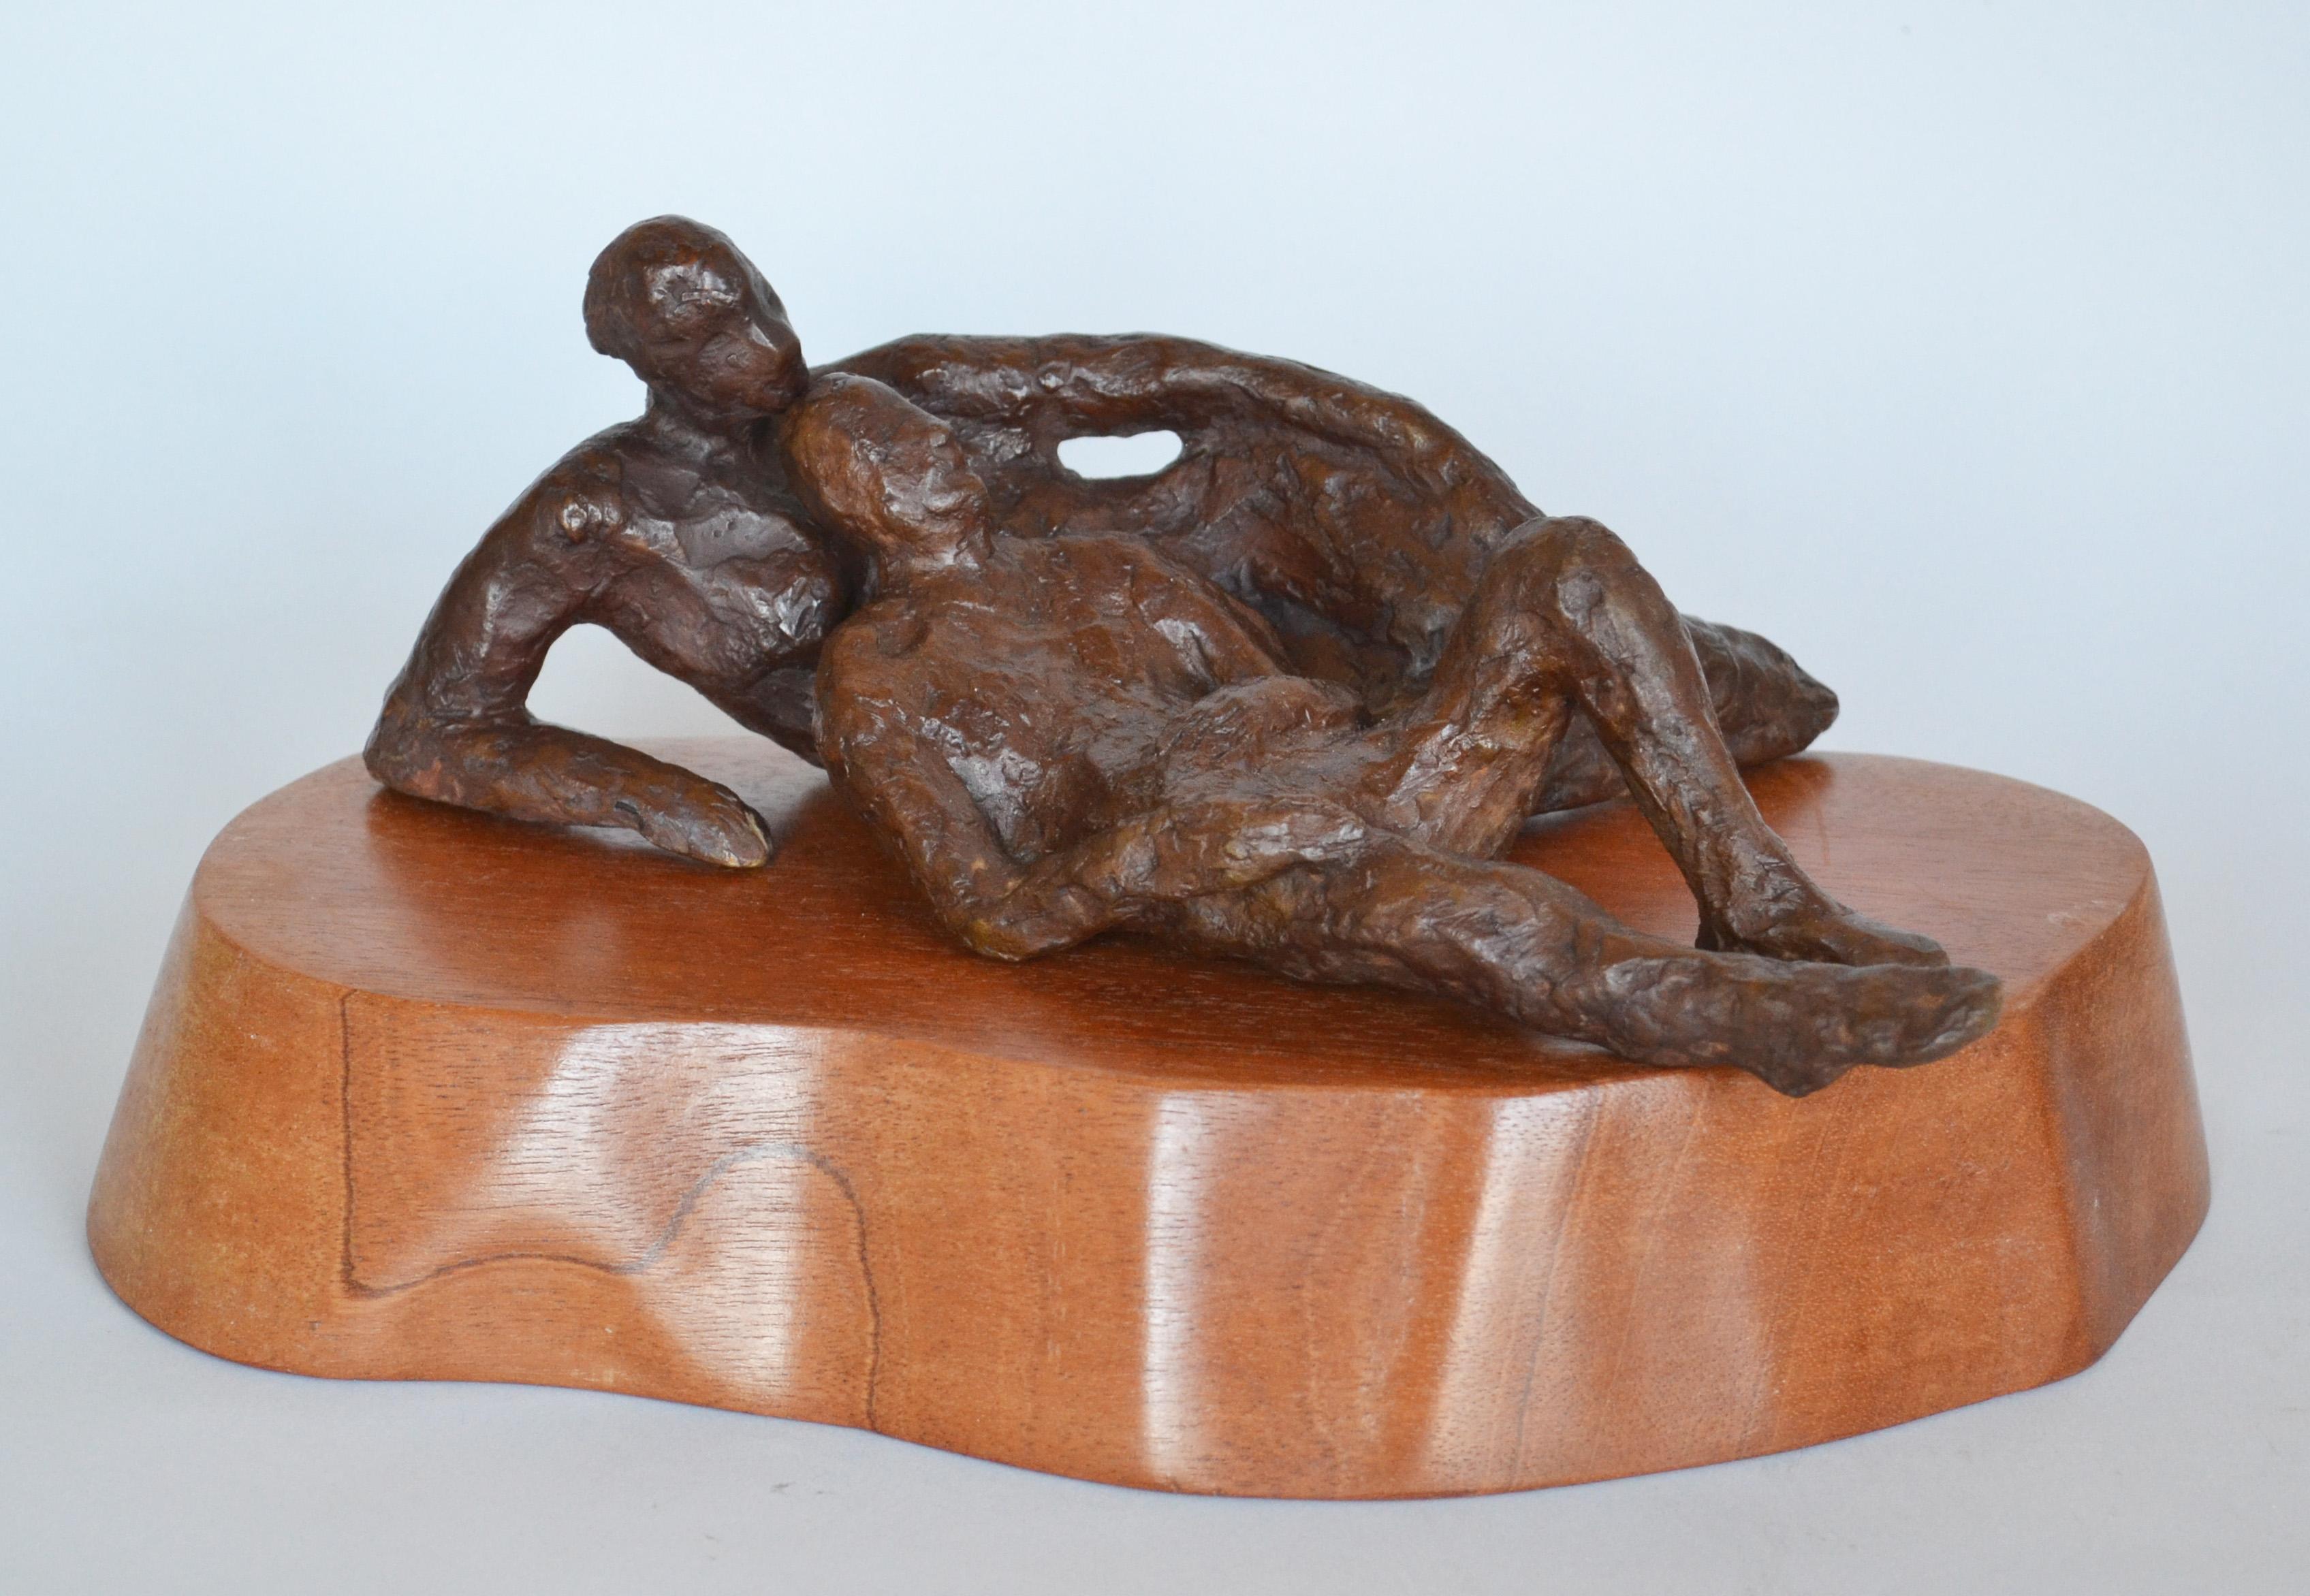 Un couple en bronze est confortablement allongé sur un socle en bois lisse. Édition 3 de 5.

L'artiste Noa Bornstein se décrit comme une "dessinatrice". Nombre de ses sculptures naissent d'un dessin rapide ou d'une impression - de mémoire, de rêve